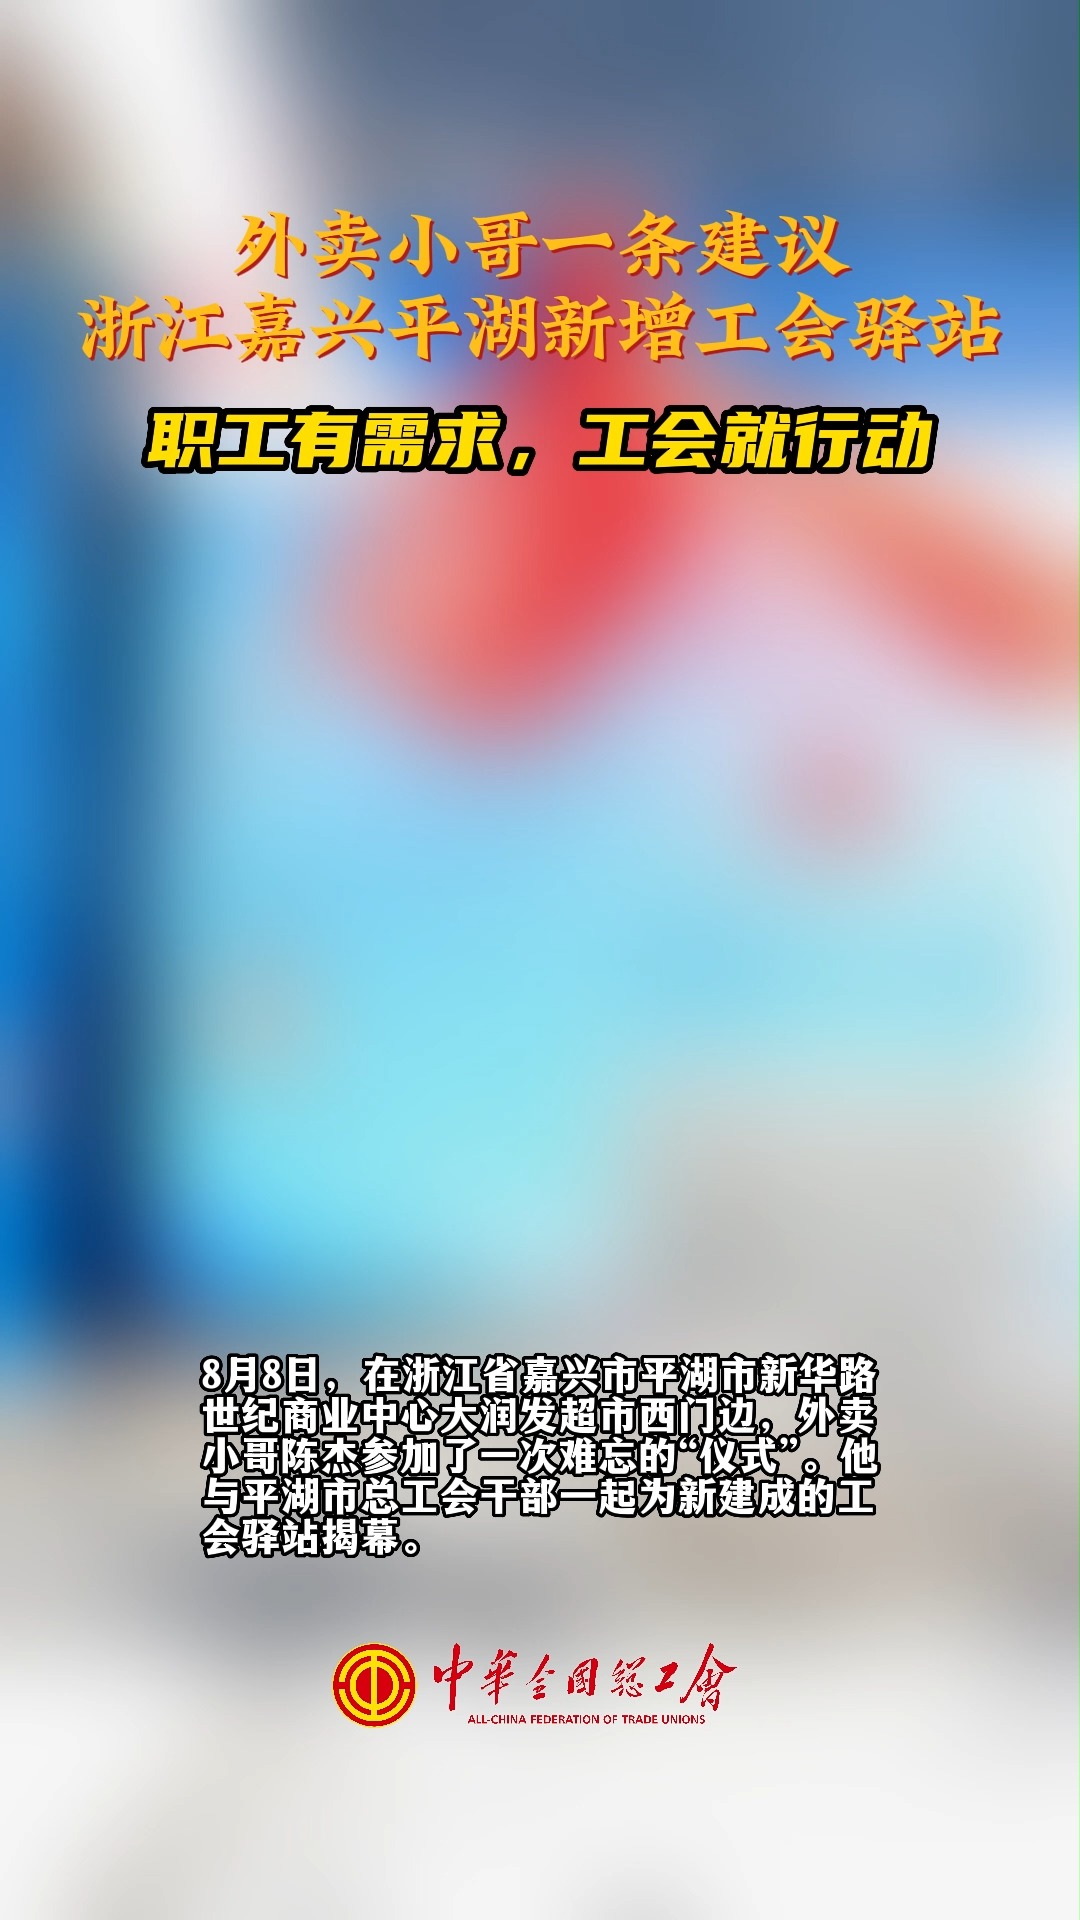 8月8日，浙江嘉兴平湖又一家#工会驿站 正式启用，落实“民呼我为”的务实行动。